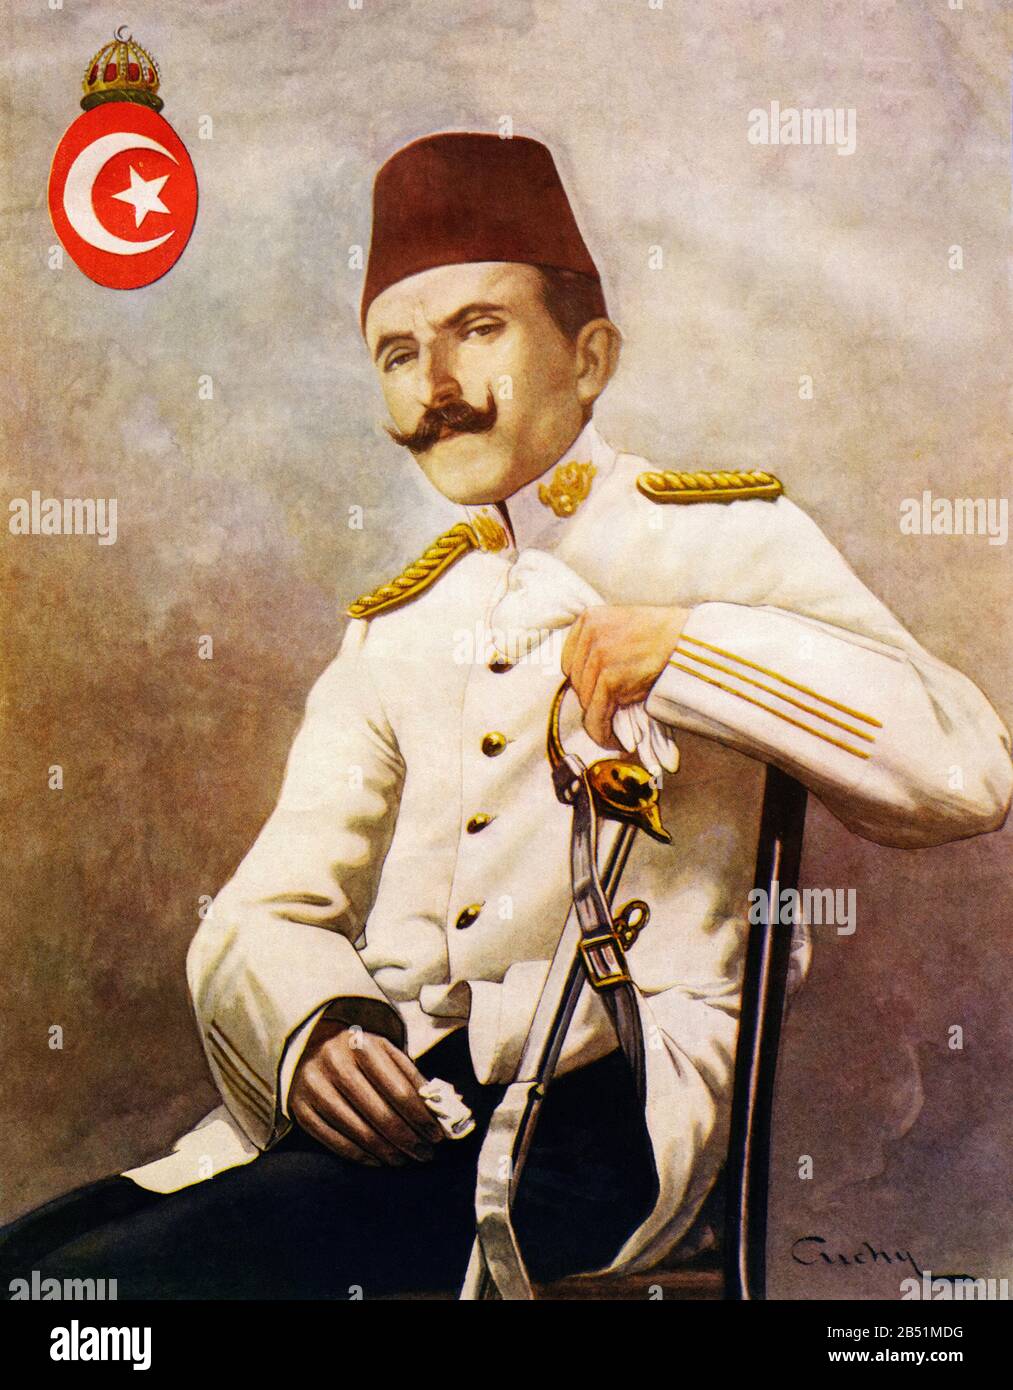 Ritratto a colori di Ismail Enver (1881 - 1922), chiamato Enver Pachá o Enver Bey, era un ufficiale dell'Impero Ottomano e leader del giovane Turchi Revo Foto Stock